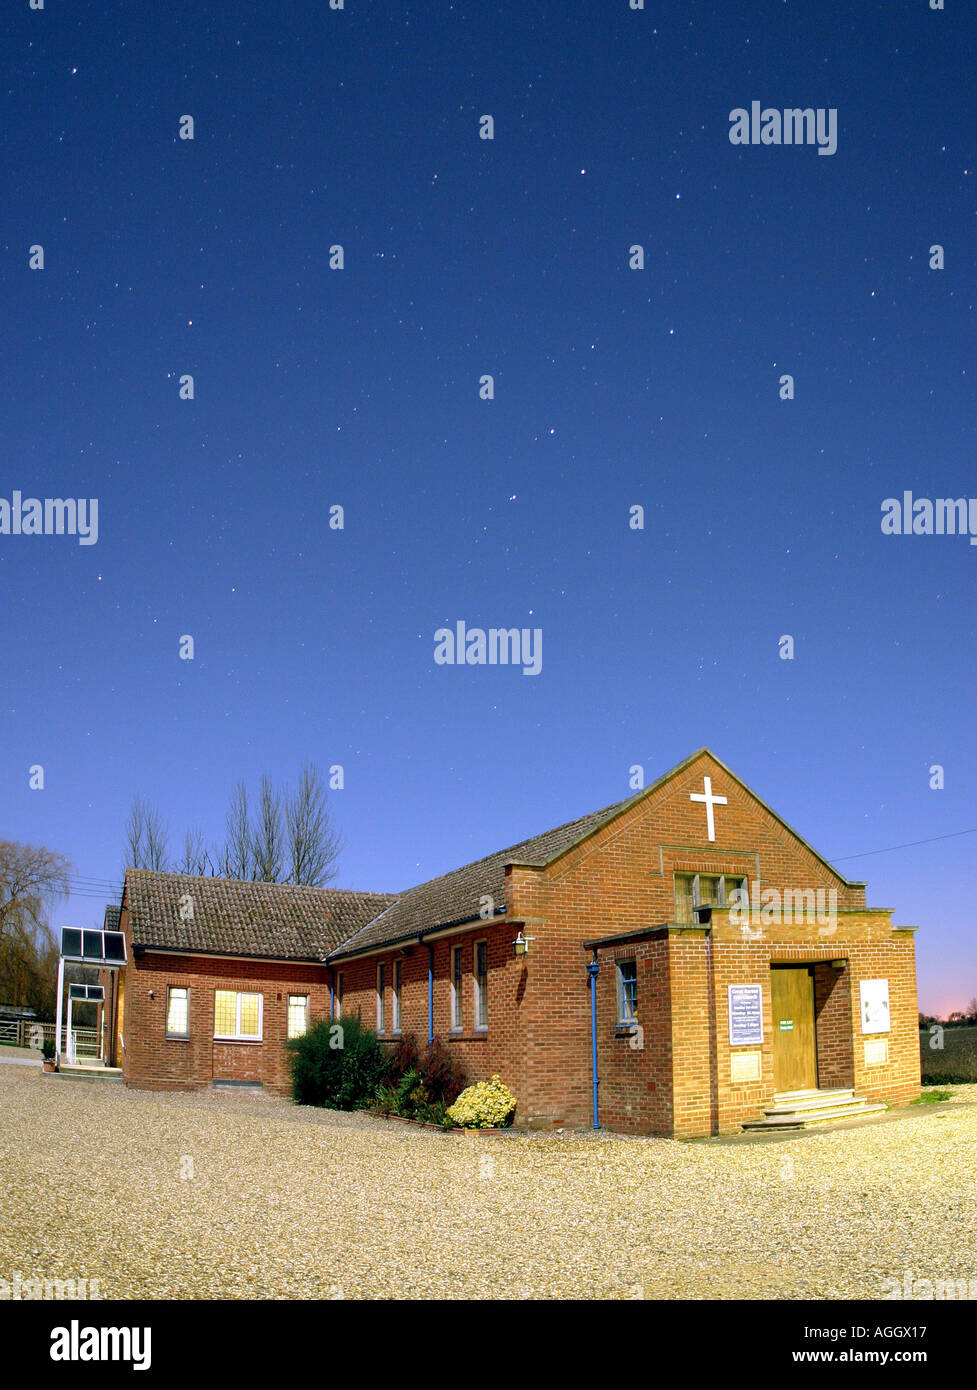 Una chiesa edificio in moonlight alcune stelle sono visibili tra cui la stella polare e big dipper costellazione dell'Orsa Maggiore Foto Stock